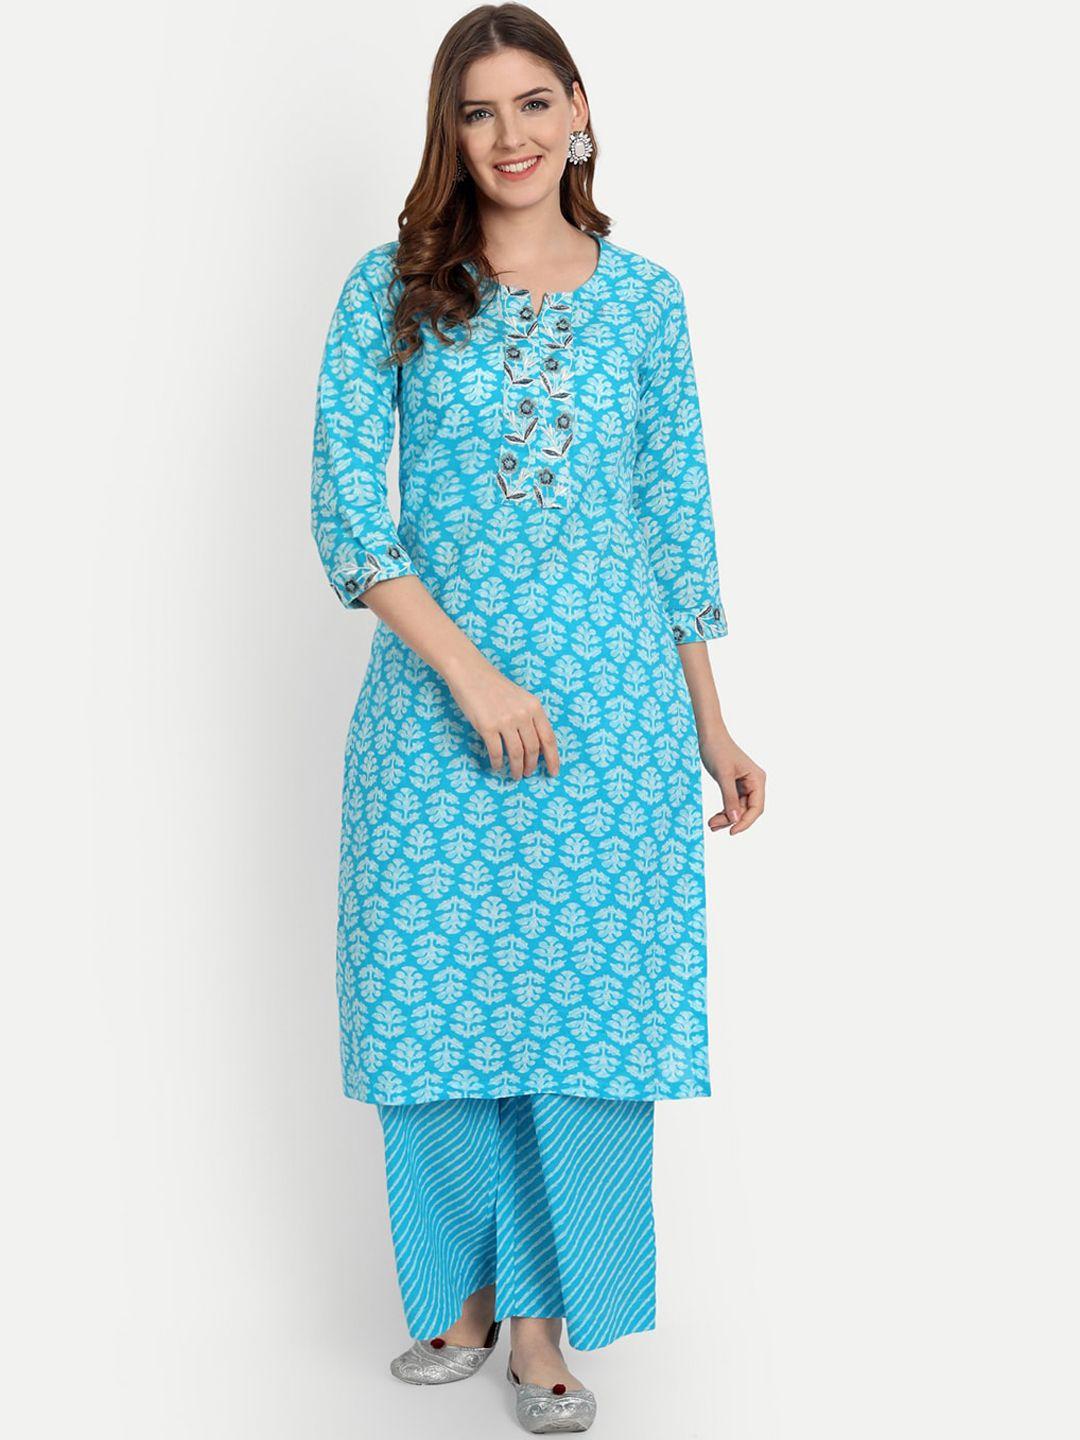 shereen women blue ethnic motifs printed pure cotton kurta with palazzos